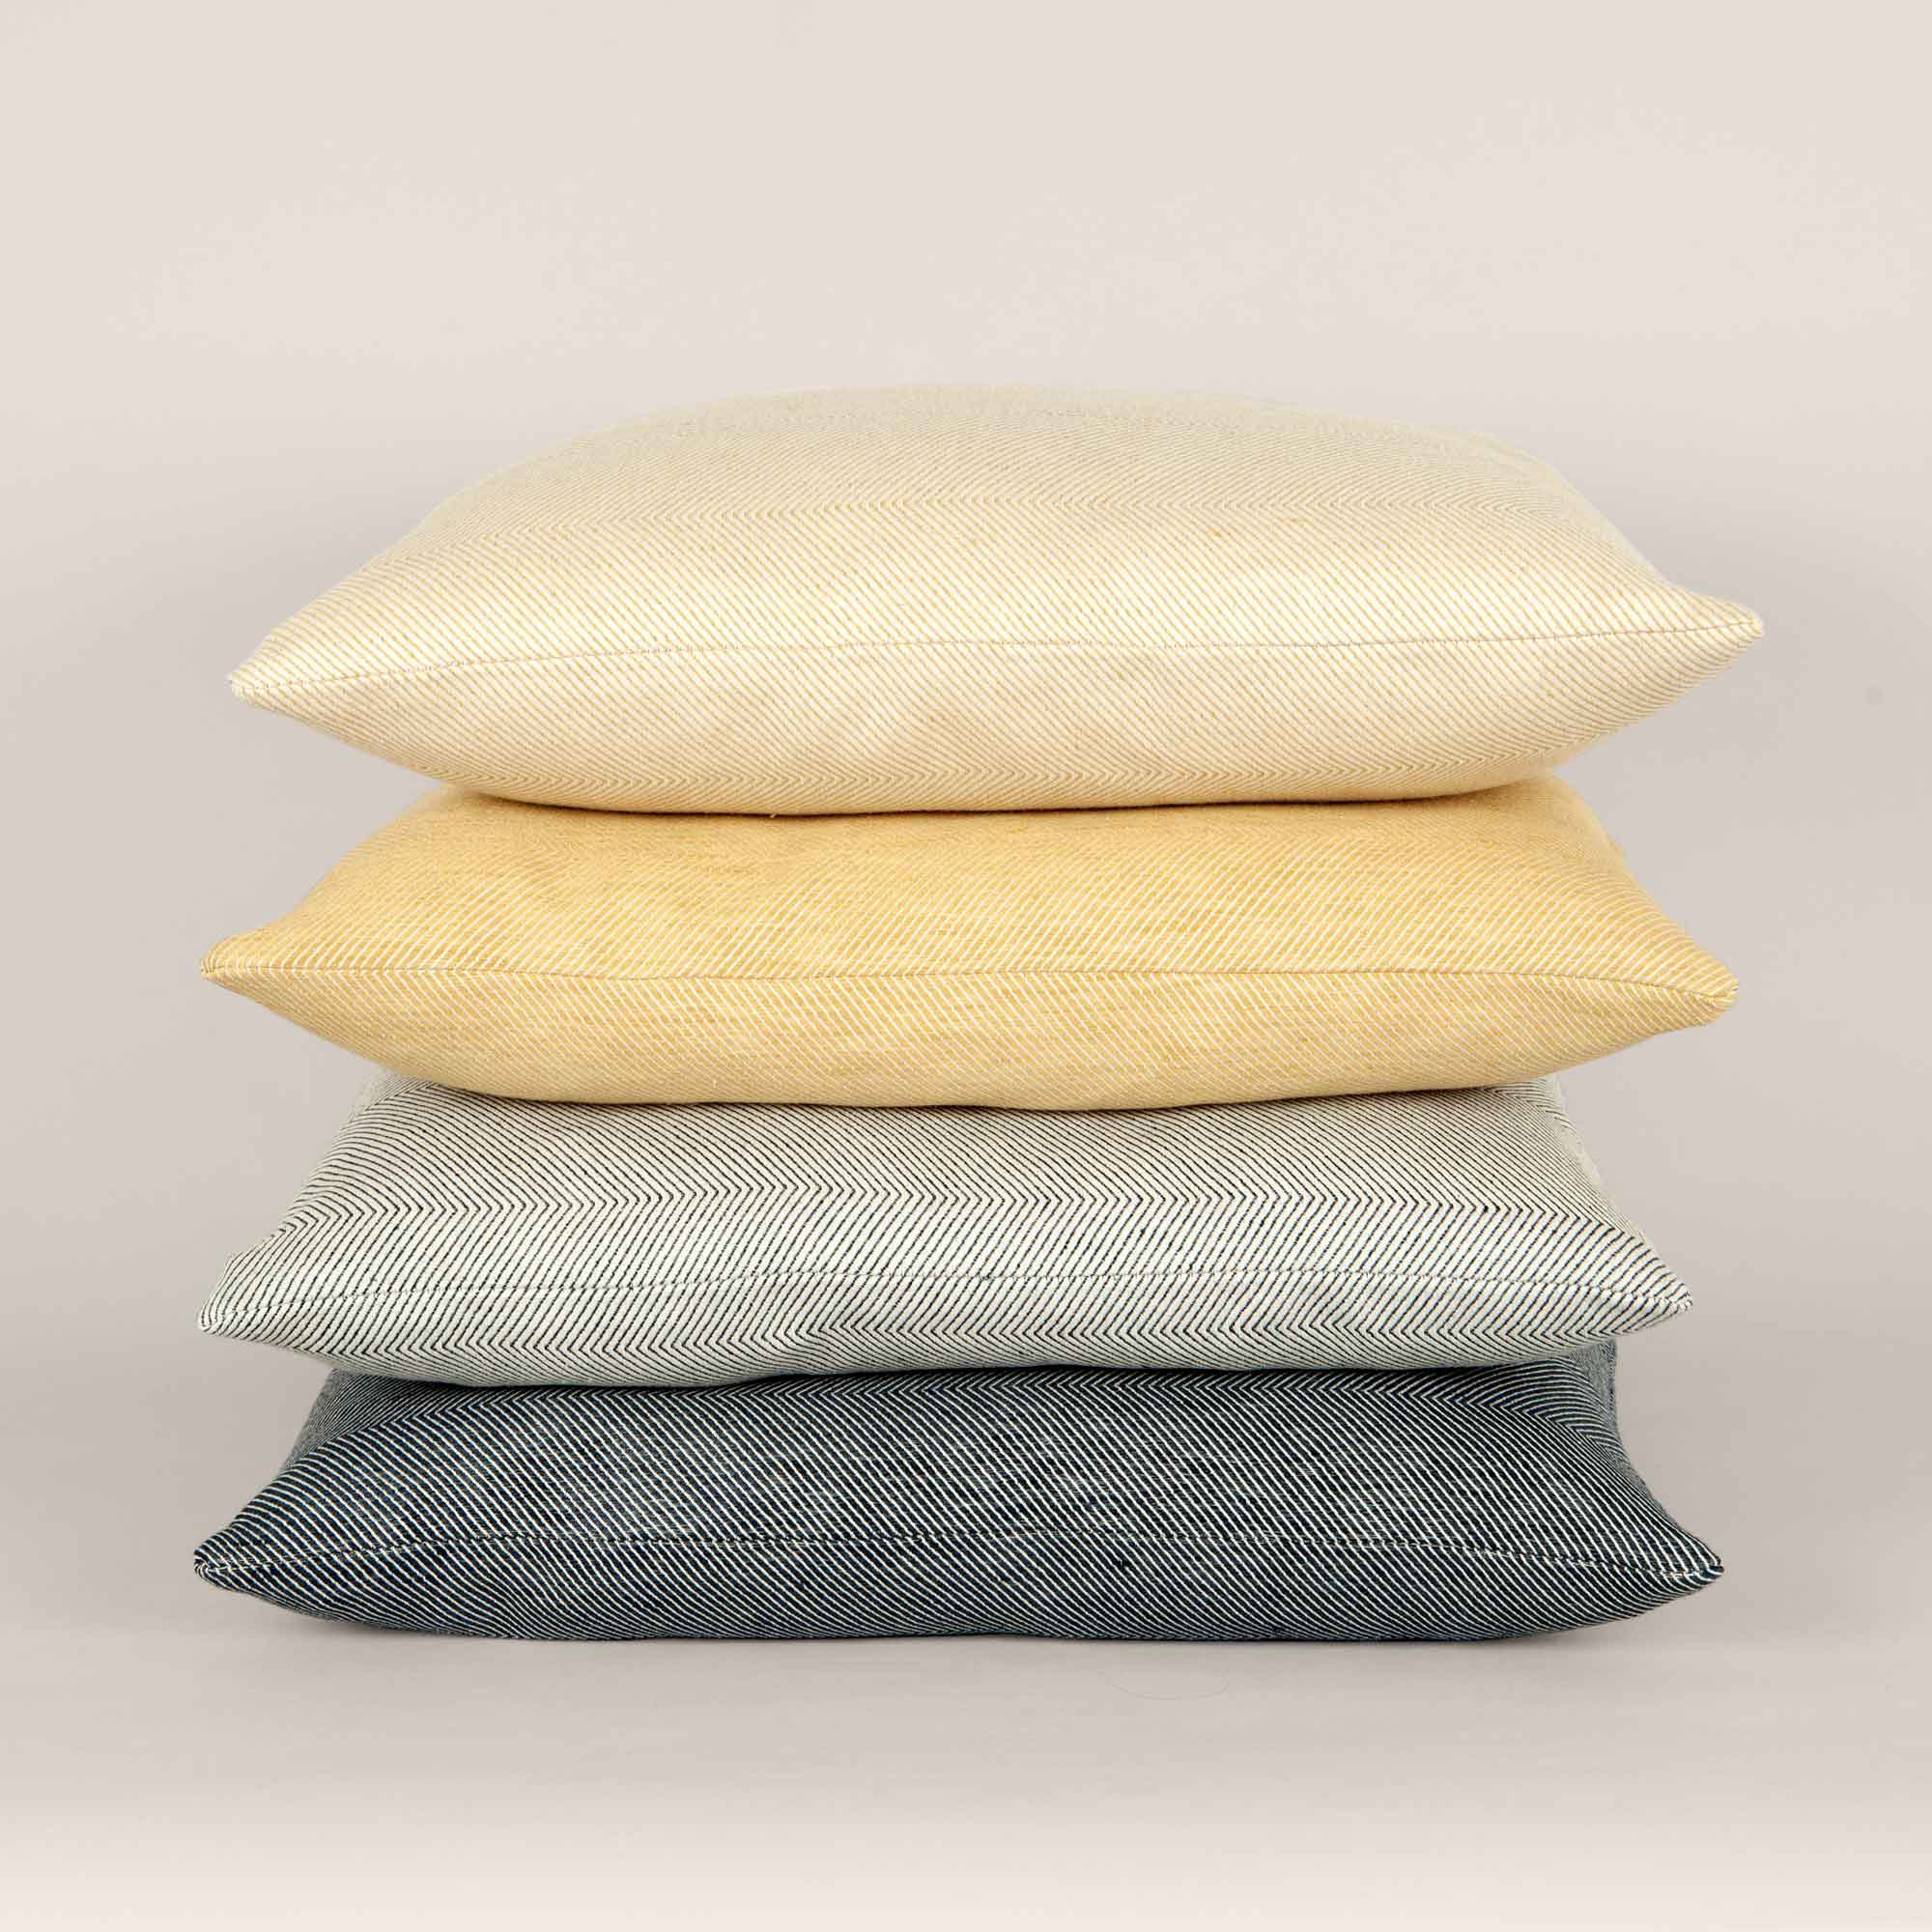 Square cushions in linen/cotton herringbone weave, design by Anne Rosenberg, RosenbergCph